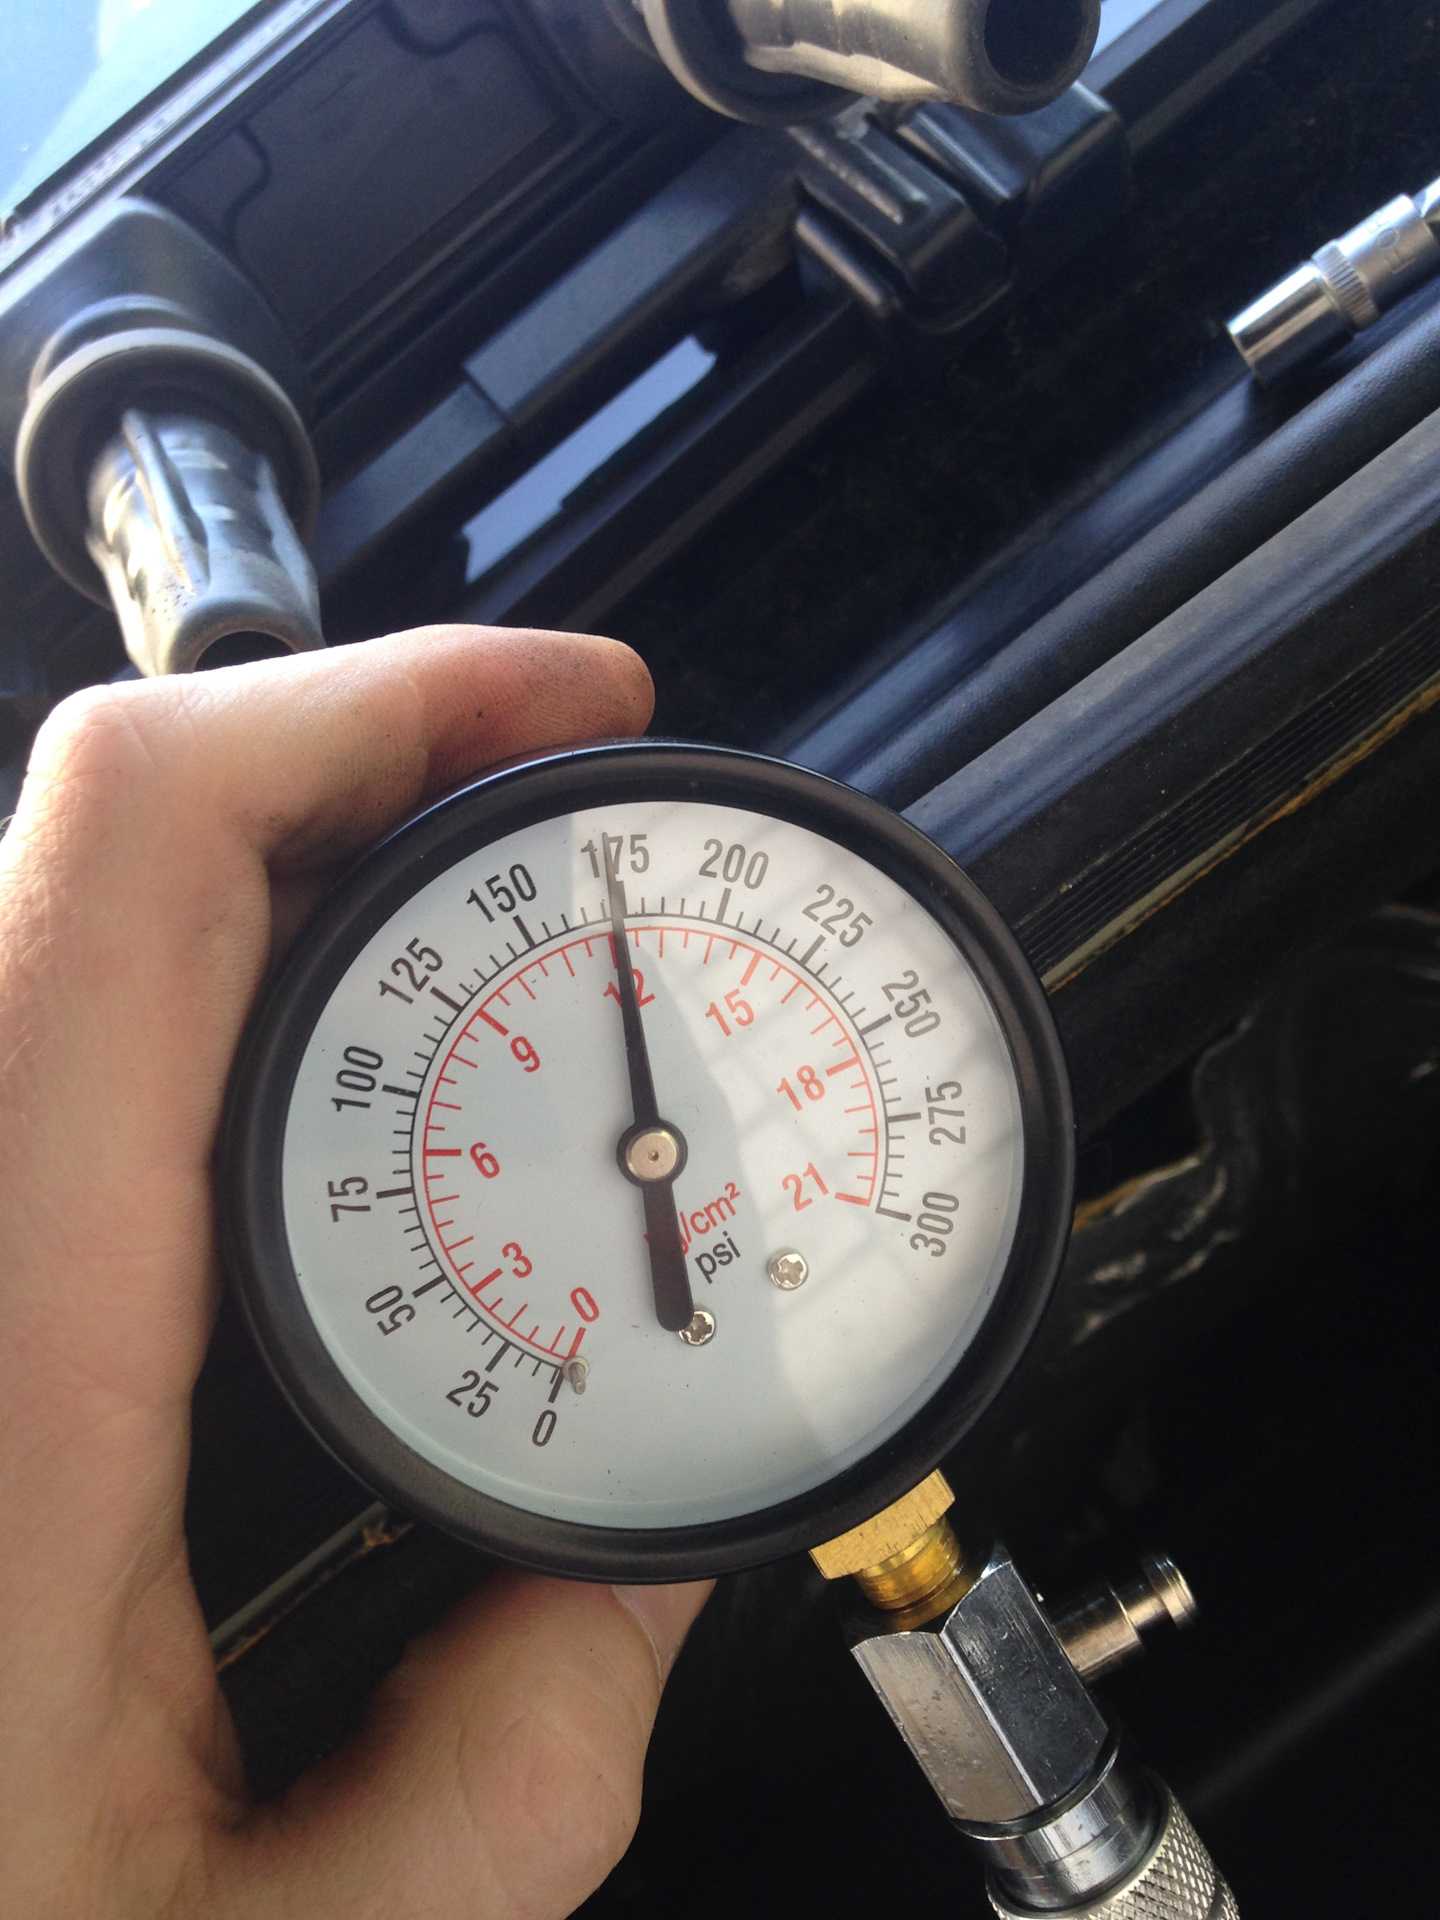 Как правильно измерить компрессию в цилиндрах двигателя автомобилей лада » лада.онлайн - все самое интересное и полезное об автомобилях lada